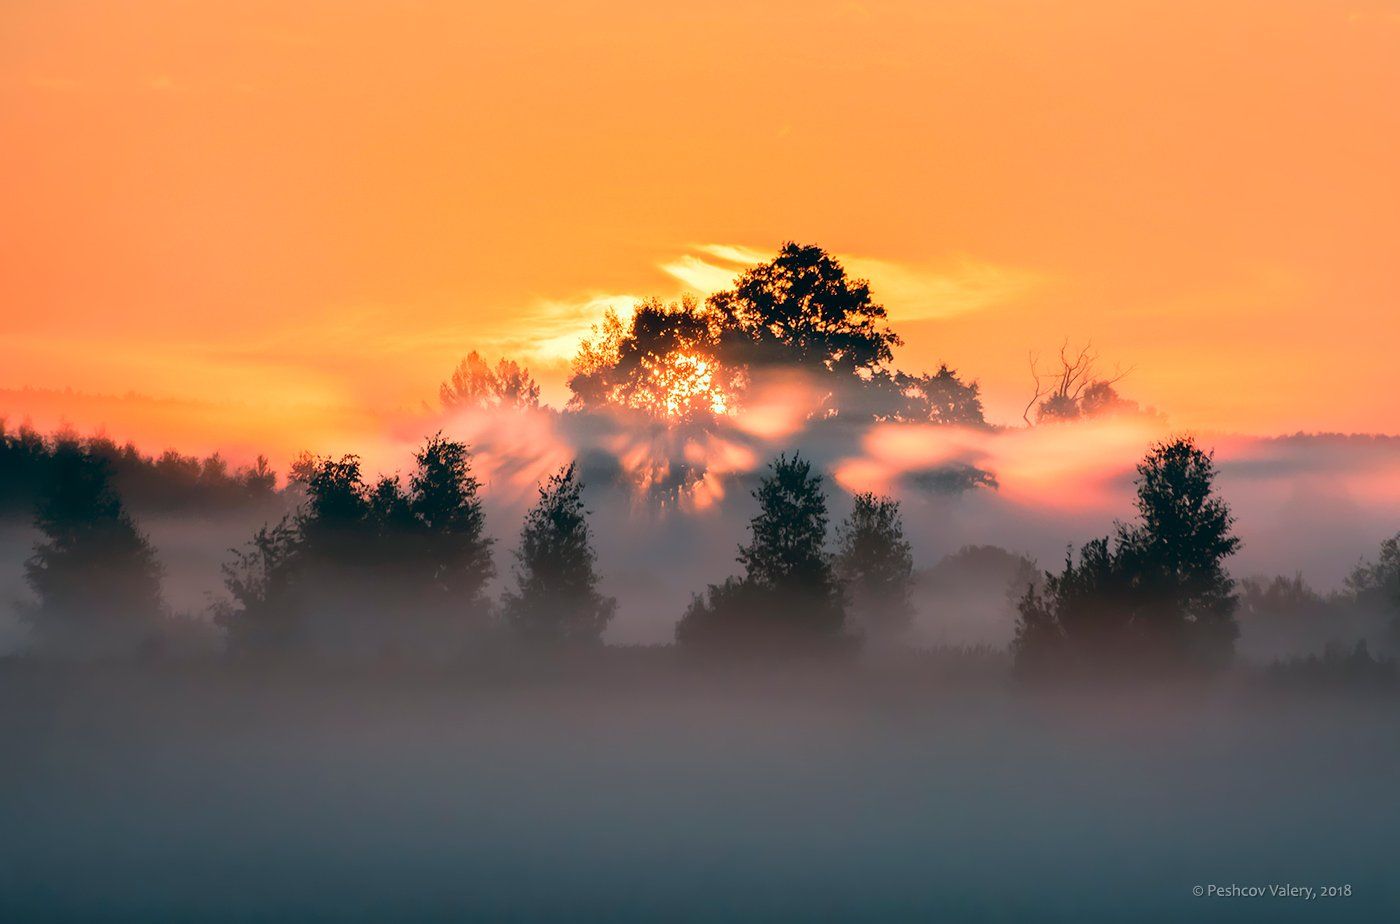 утро, солнце, лучи, туман, розовое утро, розовый туман, поля, деревья, крона, мещёра, рязанская область, Валерий Пешков